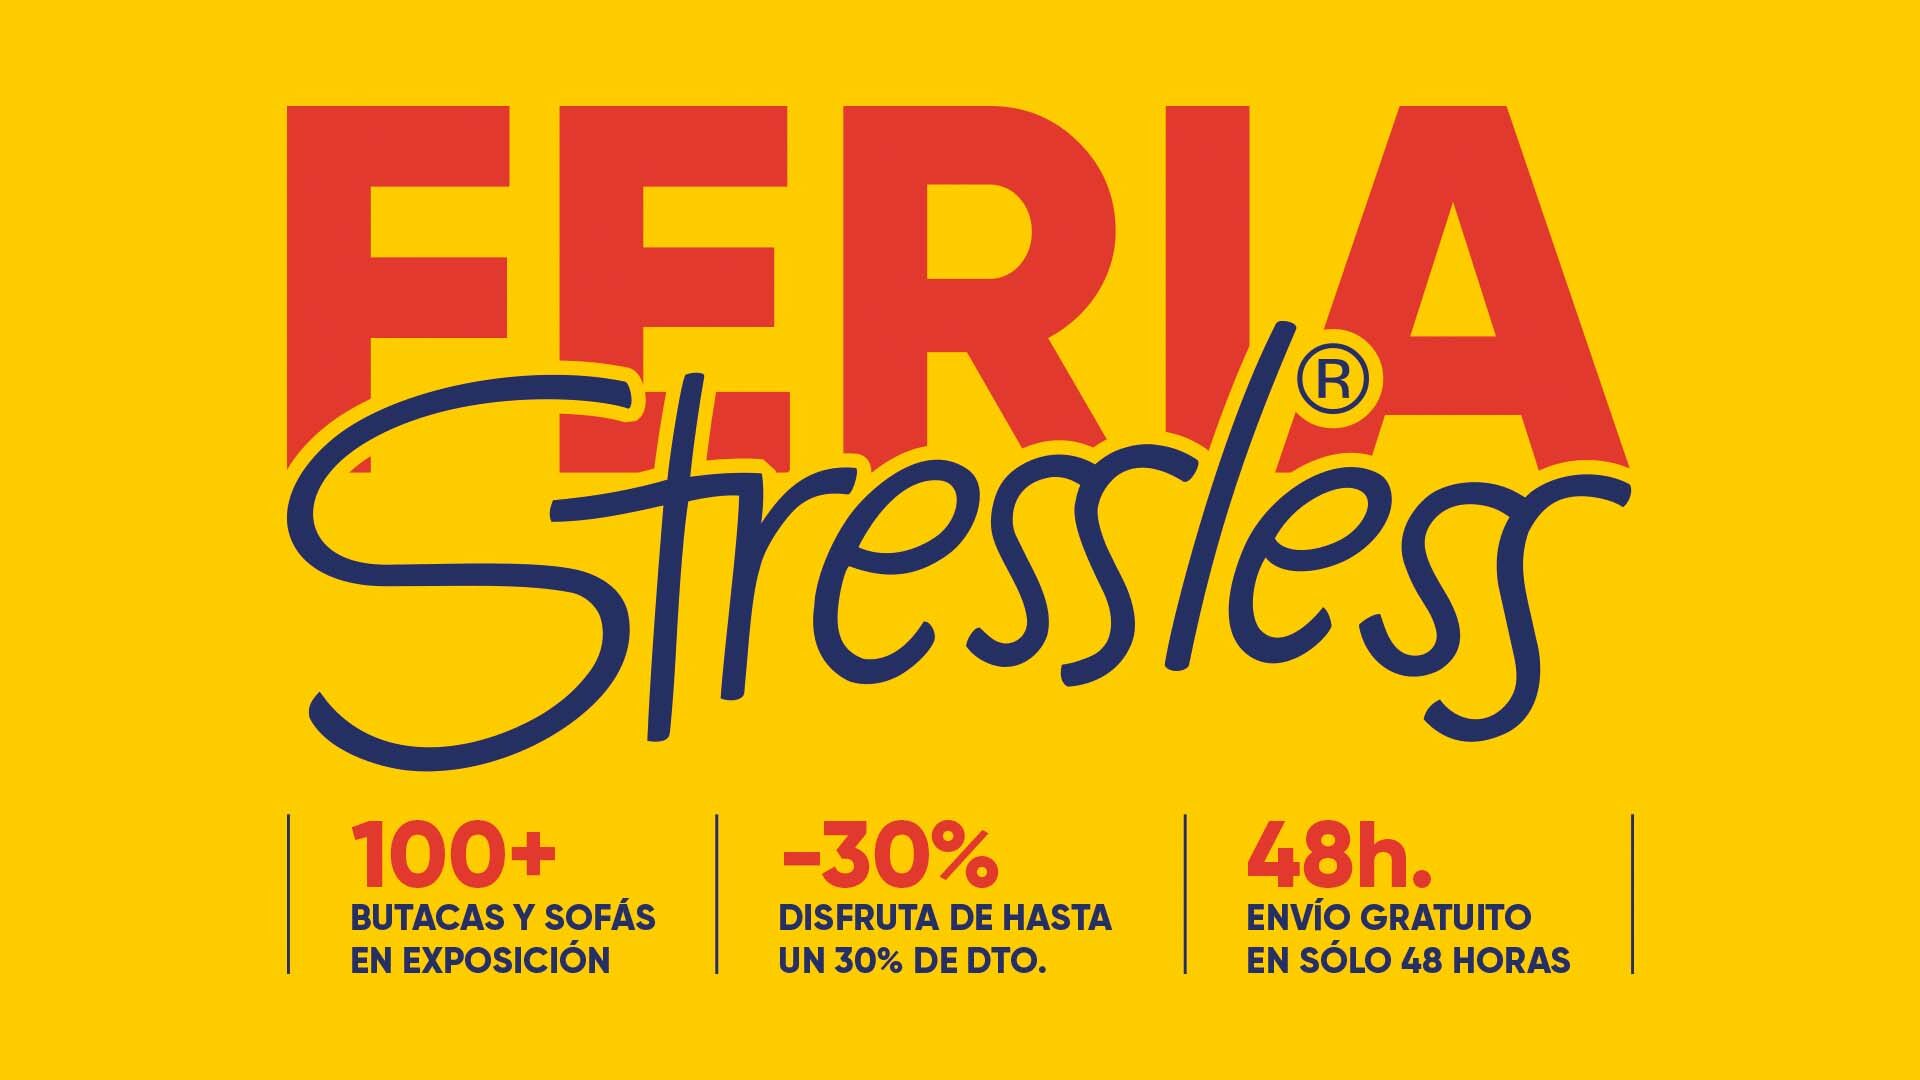 Feria Stressless en Barcelona: Hasta un 30% de descuento en butacas y sofás